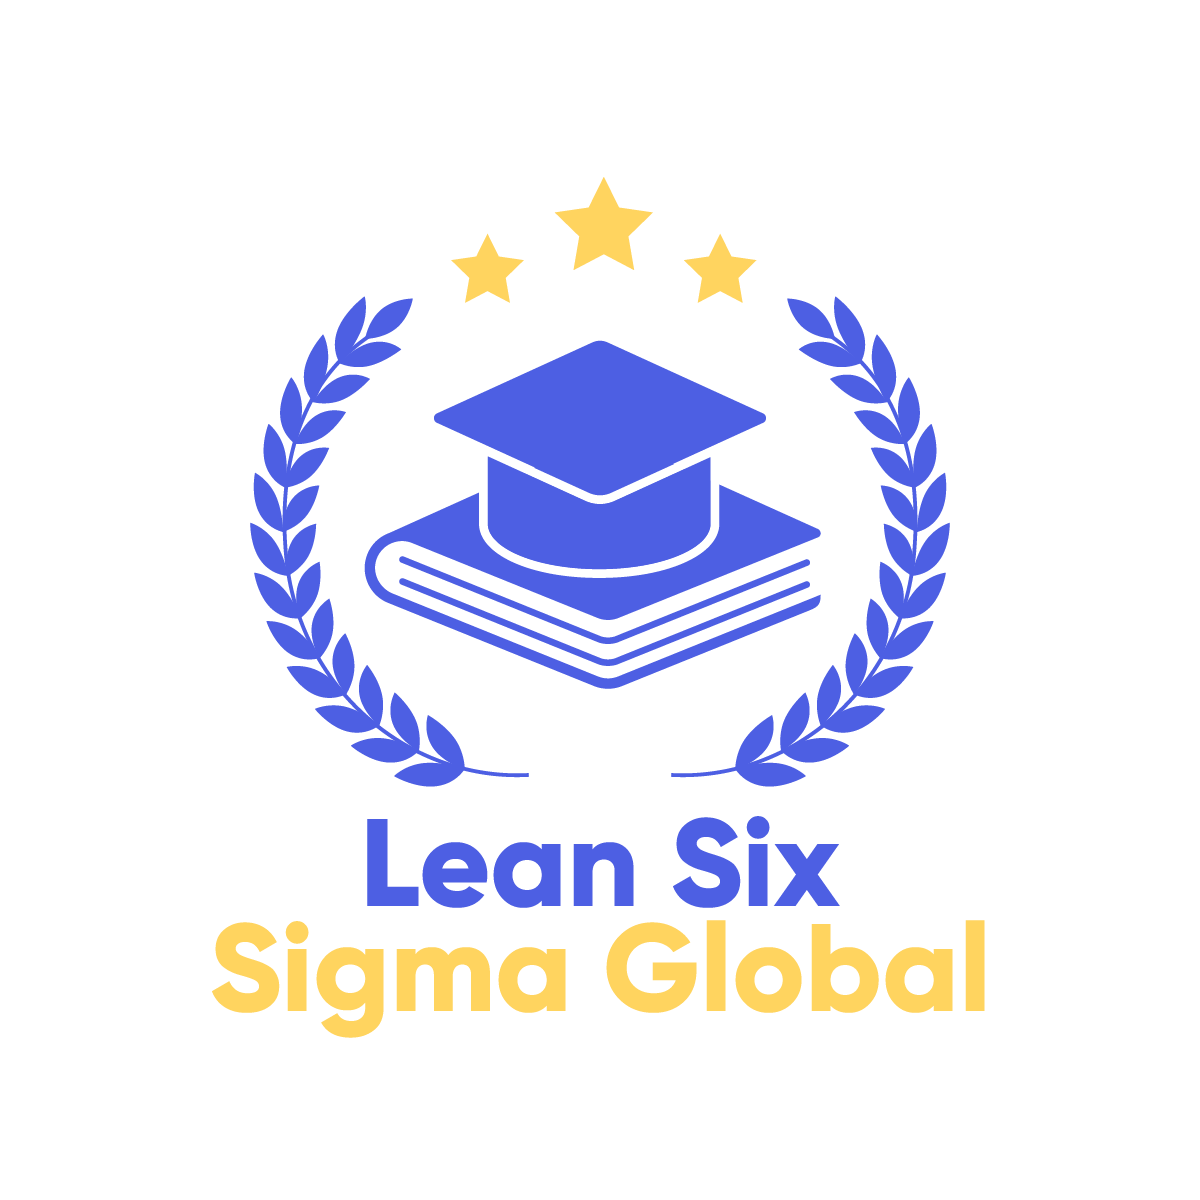 Lean Six Sigma Global